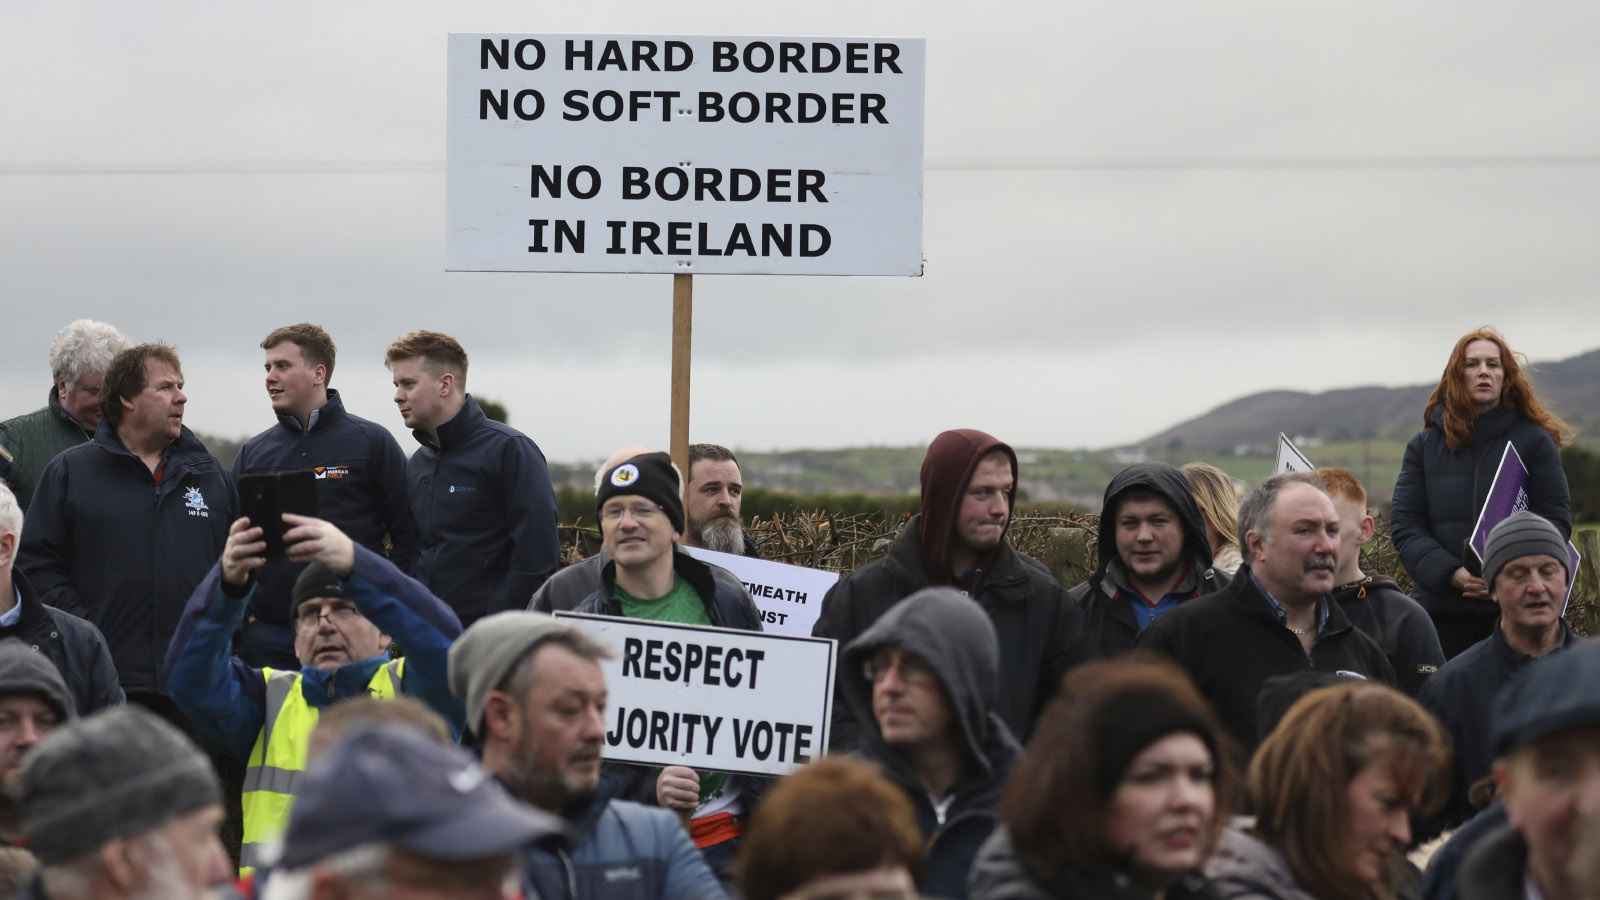 מפגינים נושאים שלטים הדורשים המשך של המצב הקיים היום בו אין גבול ממשי בין המדינות. נוארי, בגבול בין צפון אירלנד לרפובליקה של אירלנד, 26 לינואר 2019 . (AP Photo/Peter Morrison)